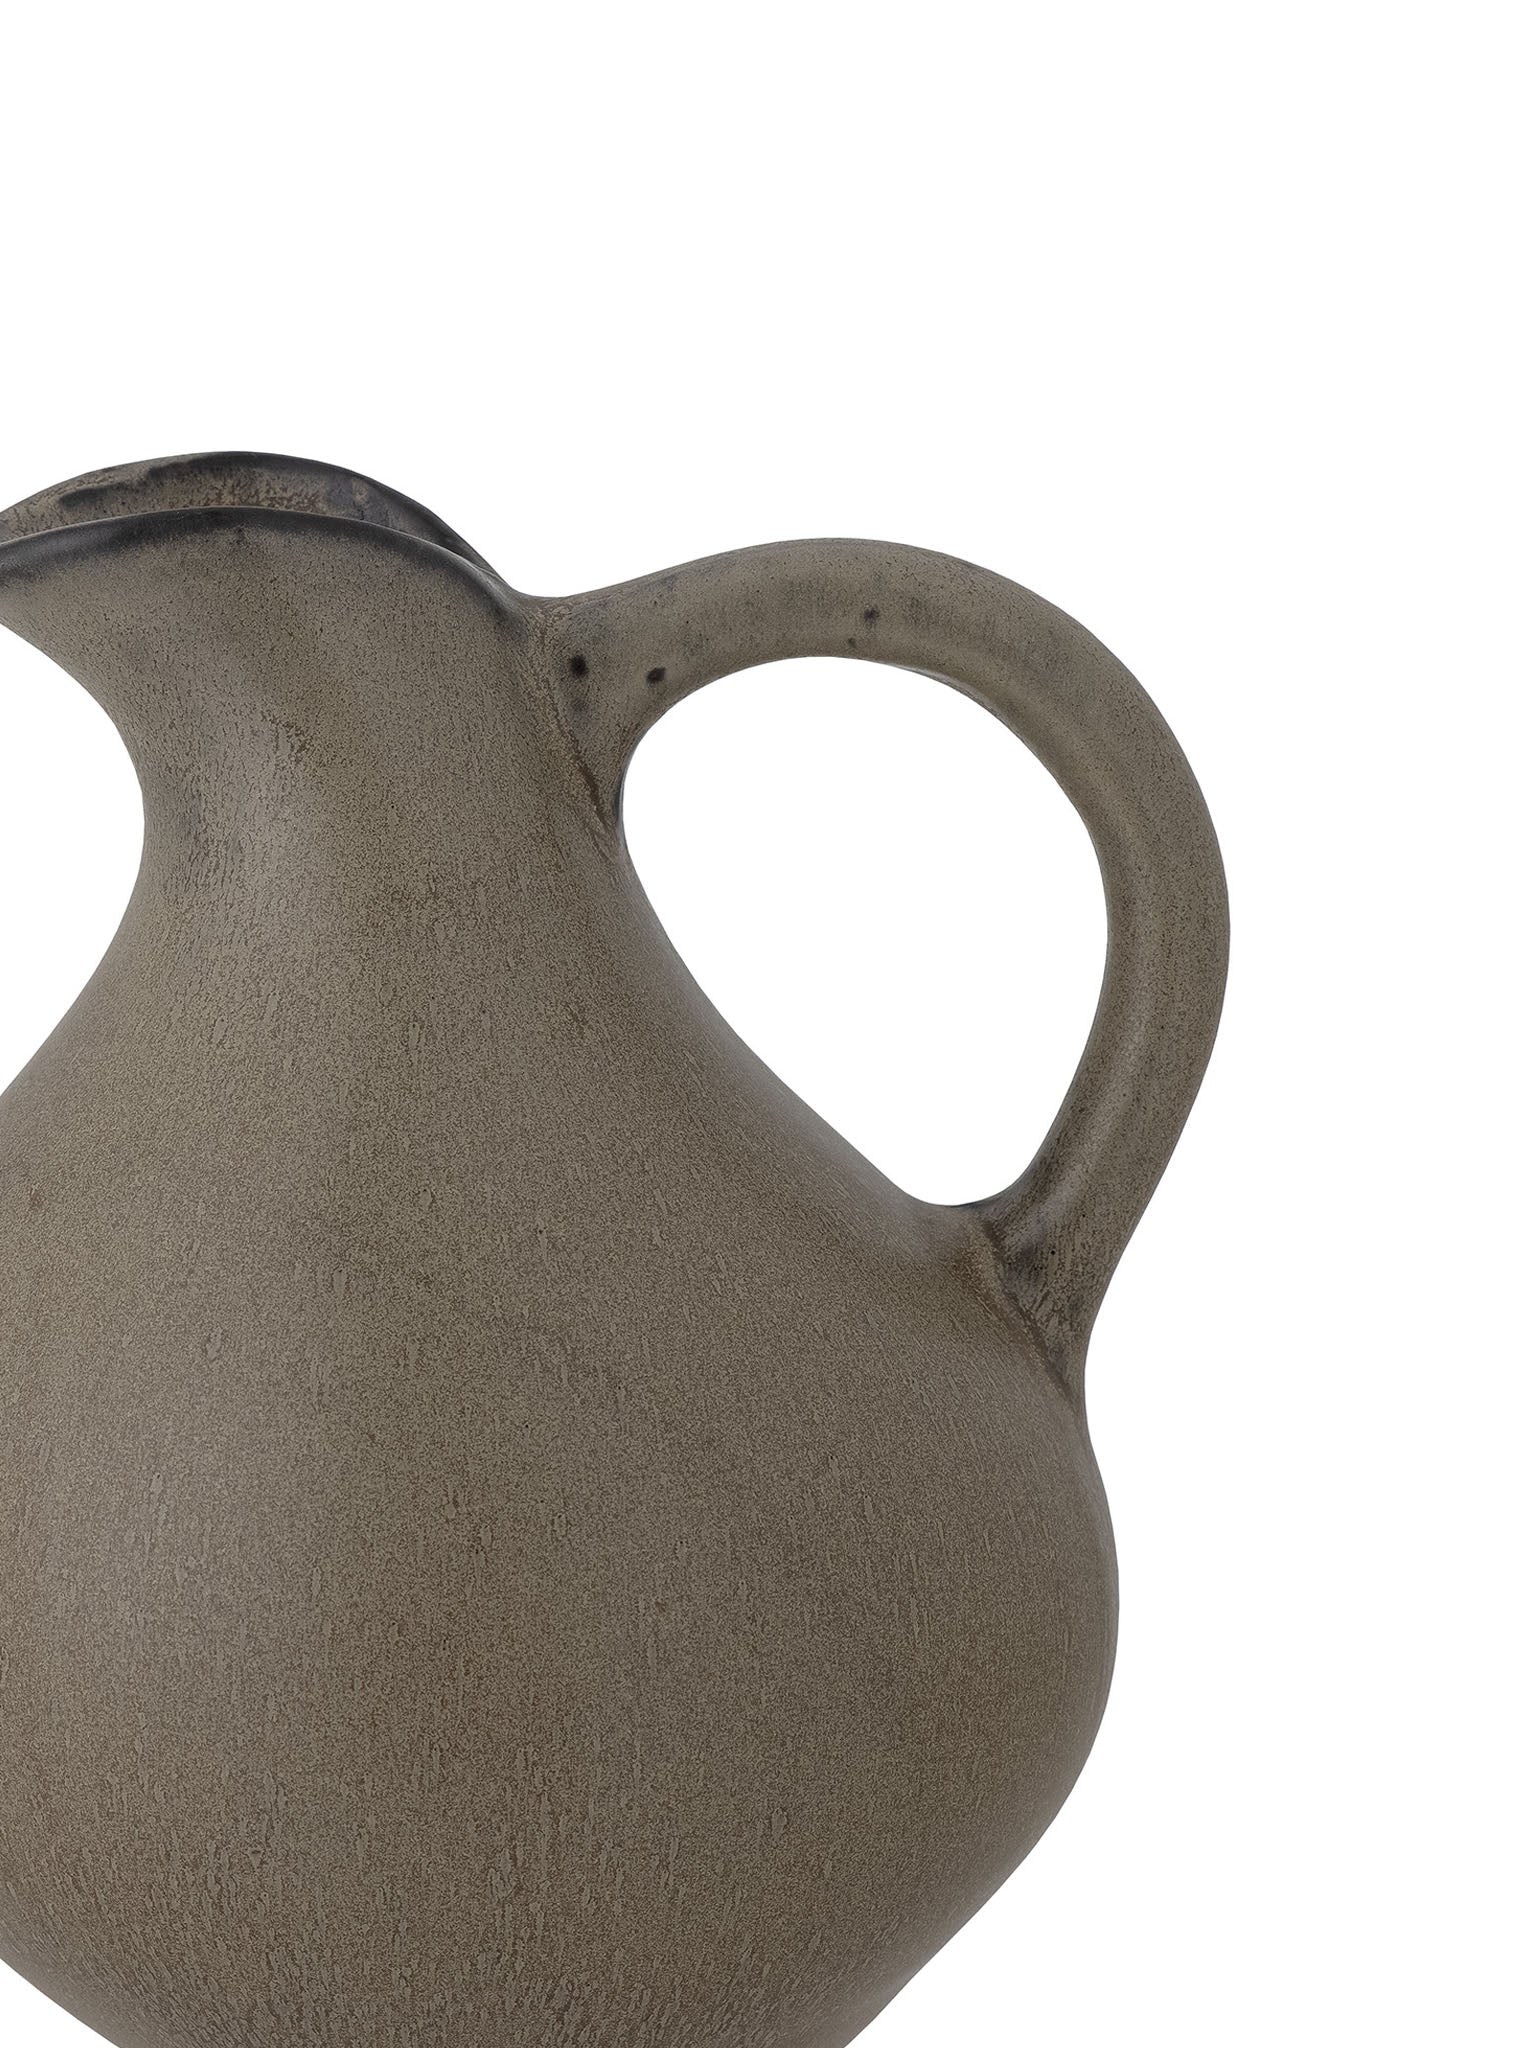 brown jug vase